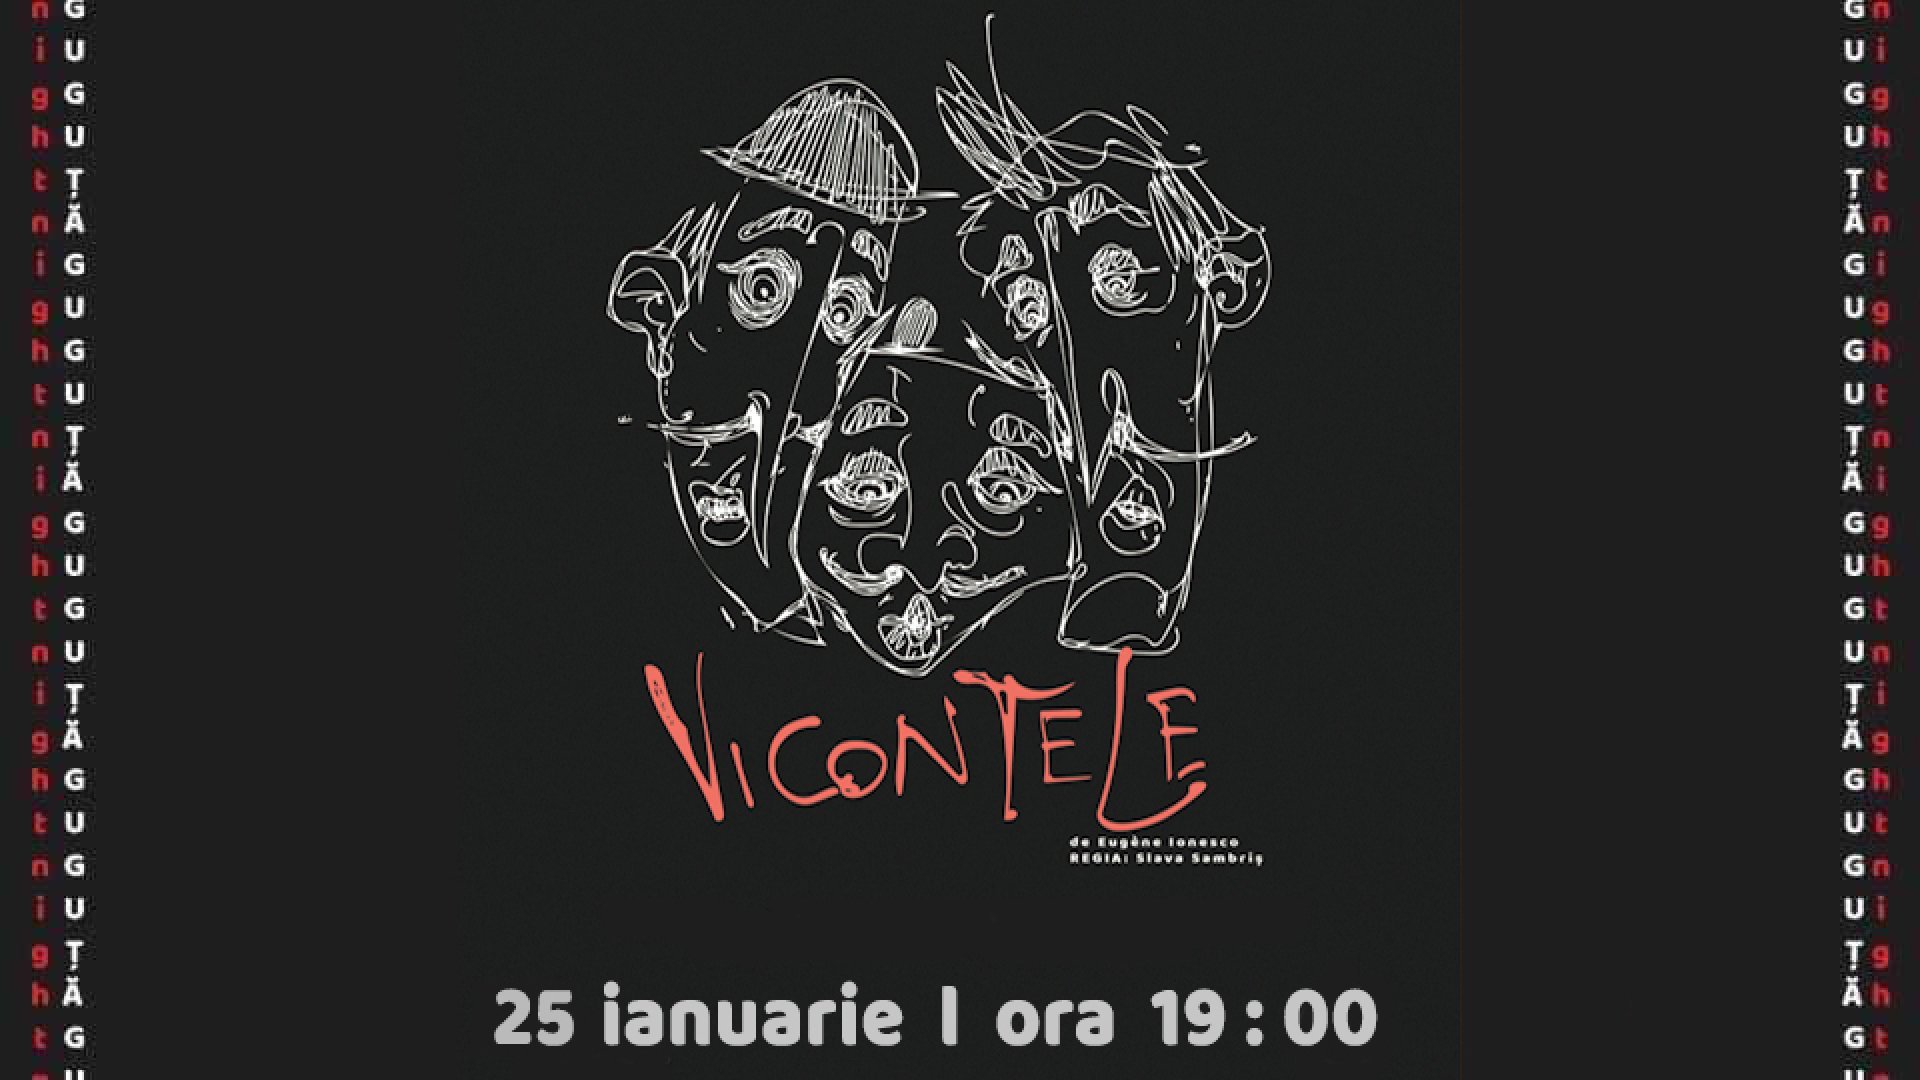 Vicontele de Eugene Ionesco ianuarie 2020 